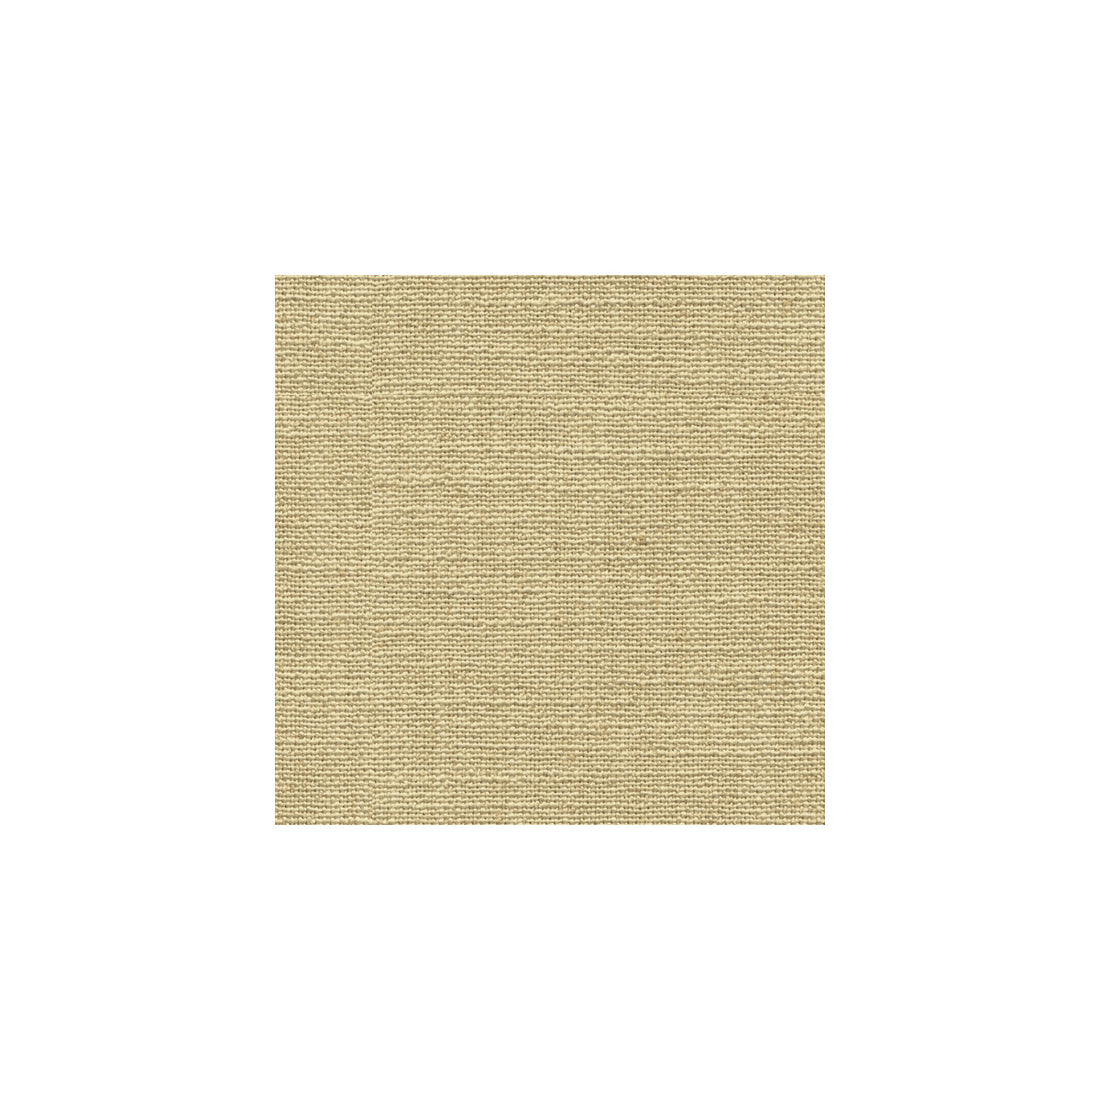 Kravet Basics fabric in 33008-1616 color - pattern 33008.1616.0 - by Kravet Basics